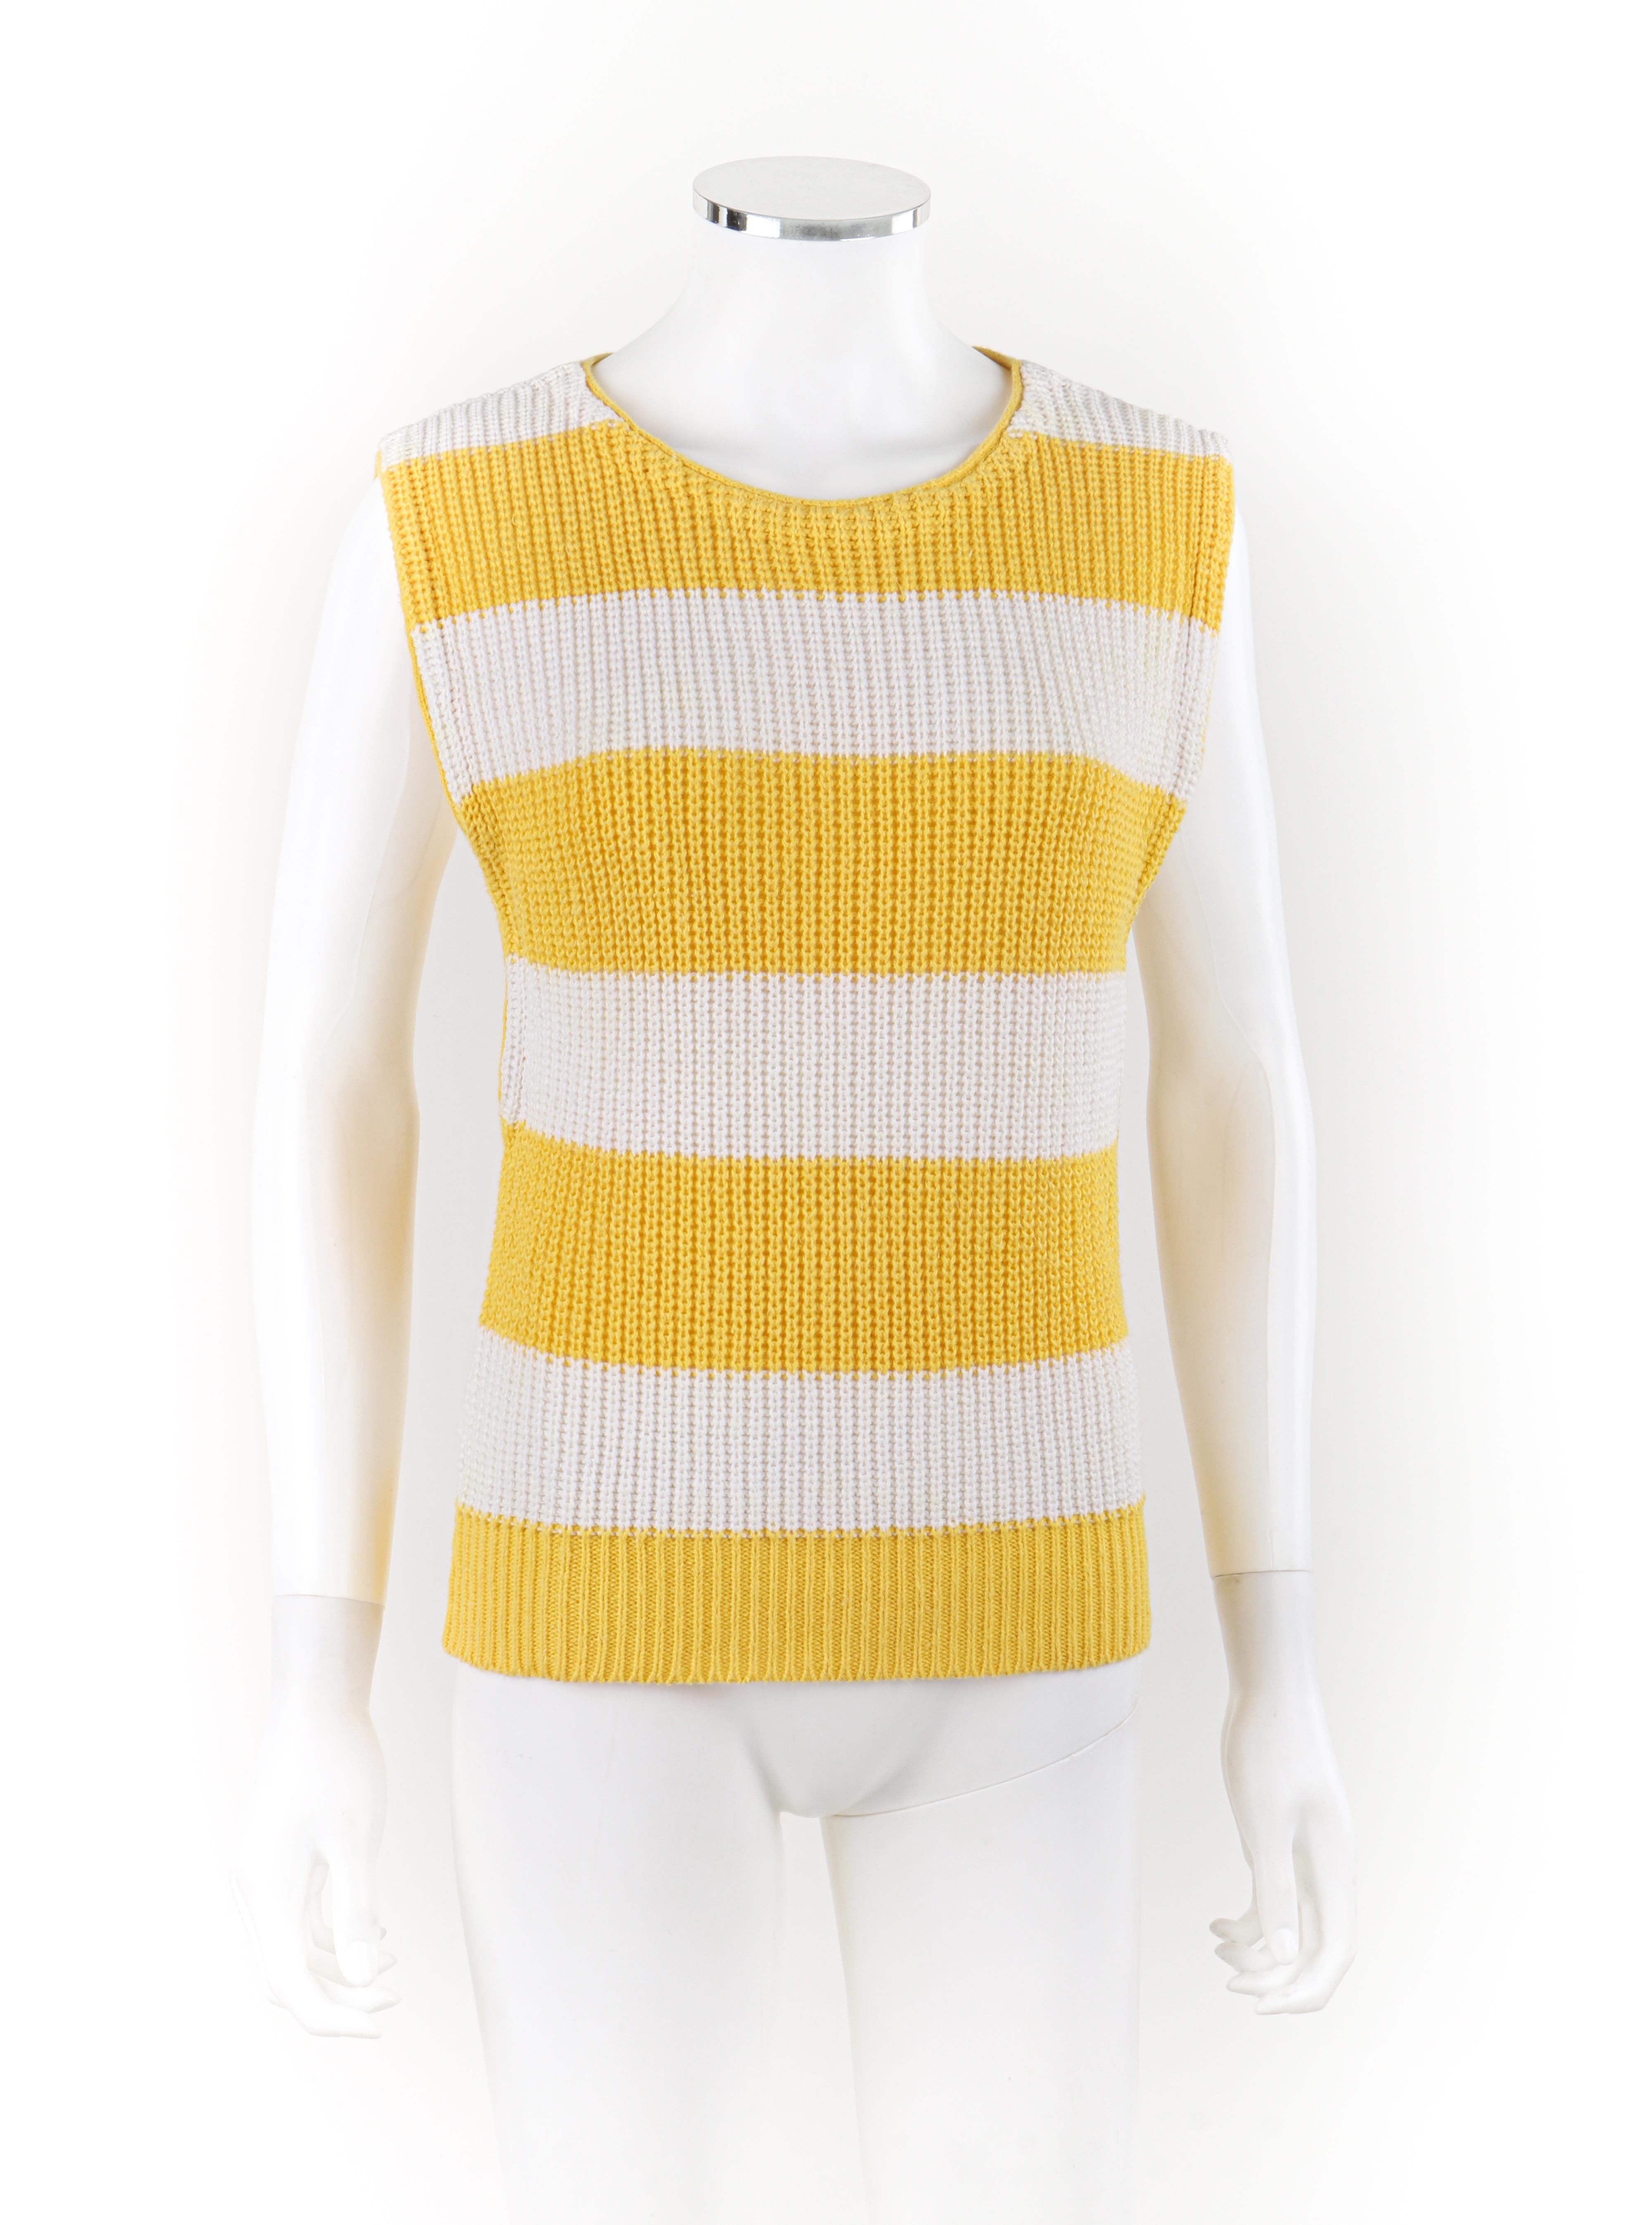 Marque / Fabricant : Diane Von Furstenberg
Circa : 1980
Créatrice : Diane von Furstenberg
Style : Sweat-shirt
Couleur(s) : nuances de jaune, blanc
Doublée : Non
Contenu du tissu marqué : 